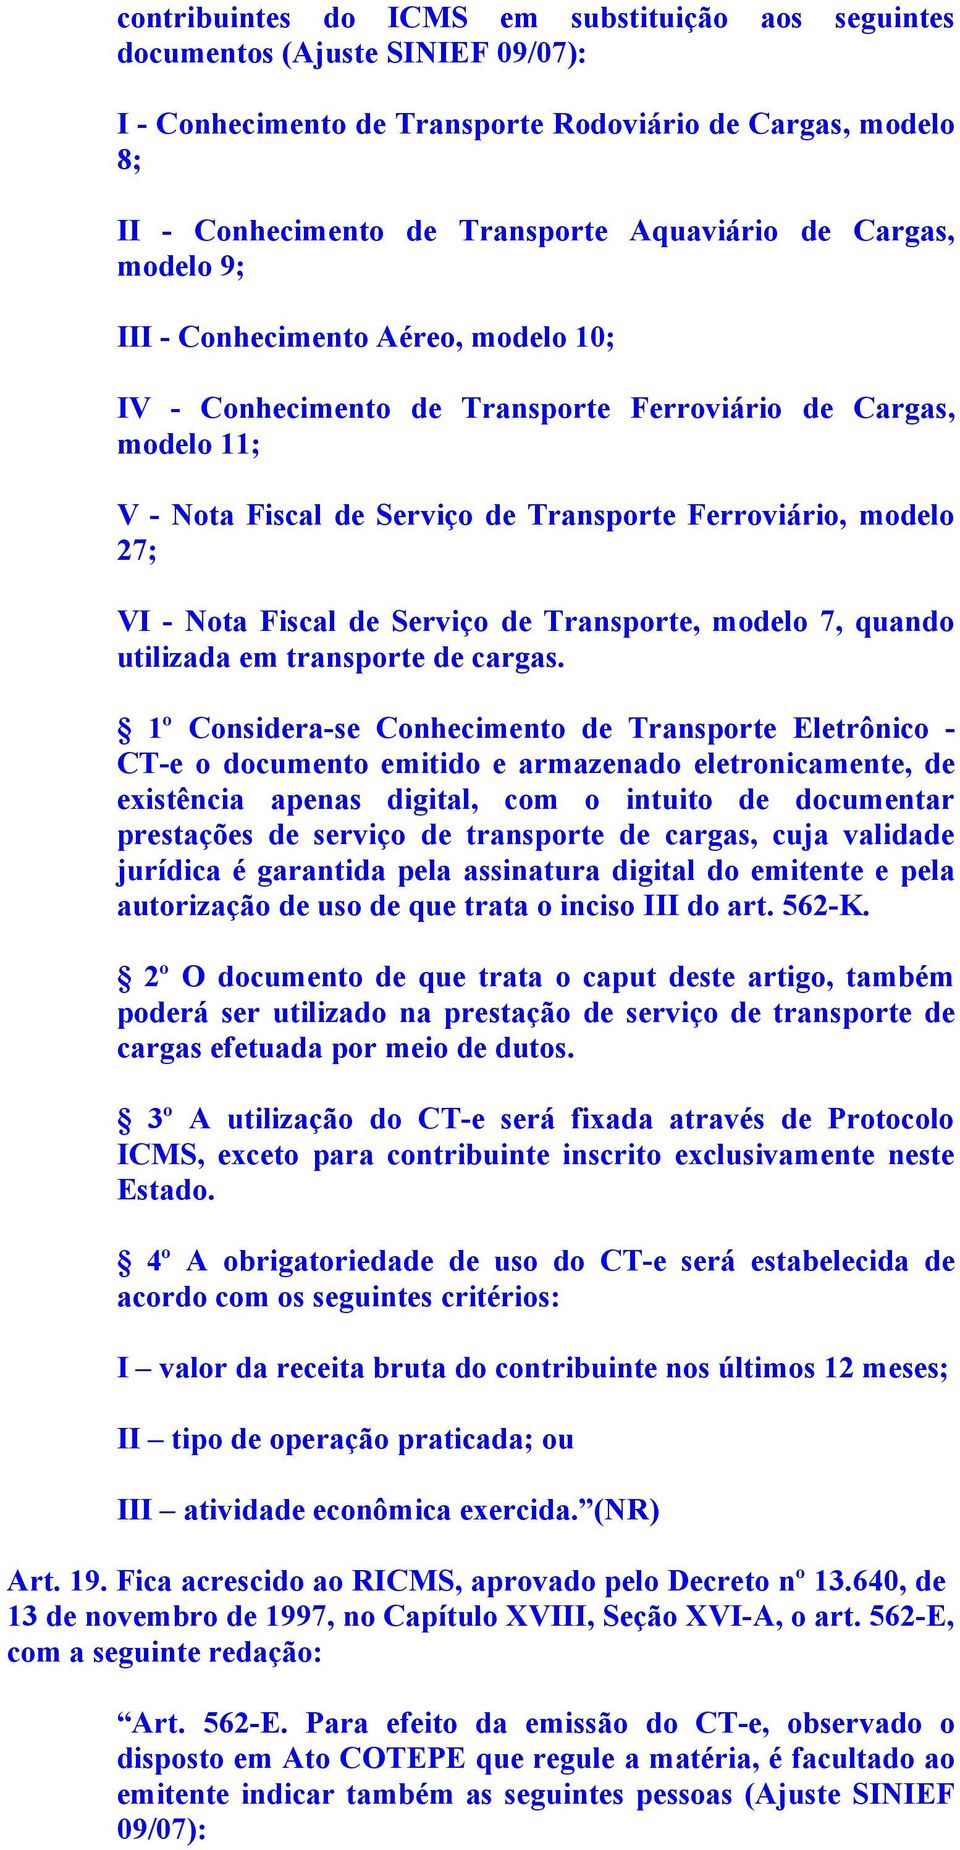 Fiscal de Serviço de Transporte, modelo 7, quando utilizada em transporte de cargas.